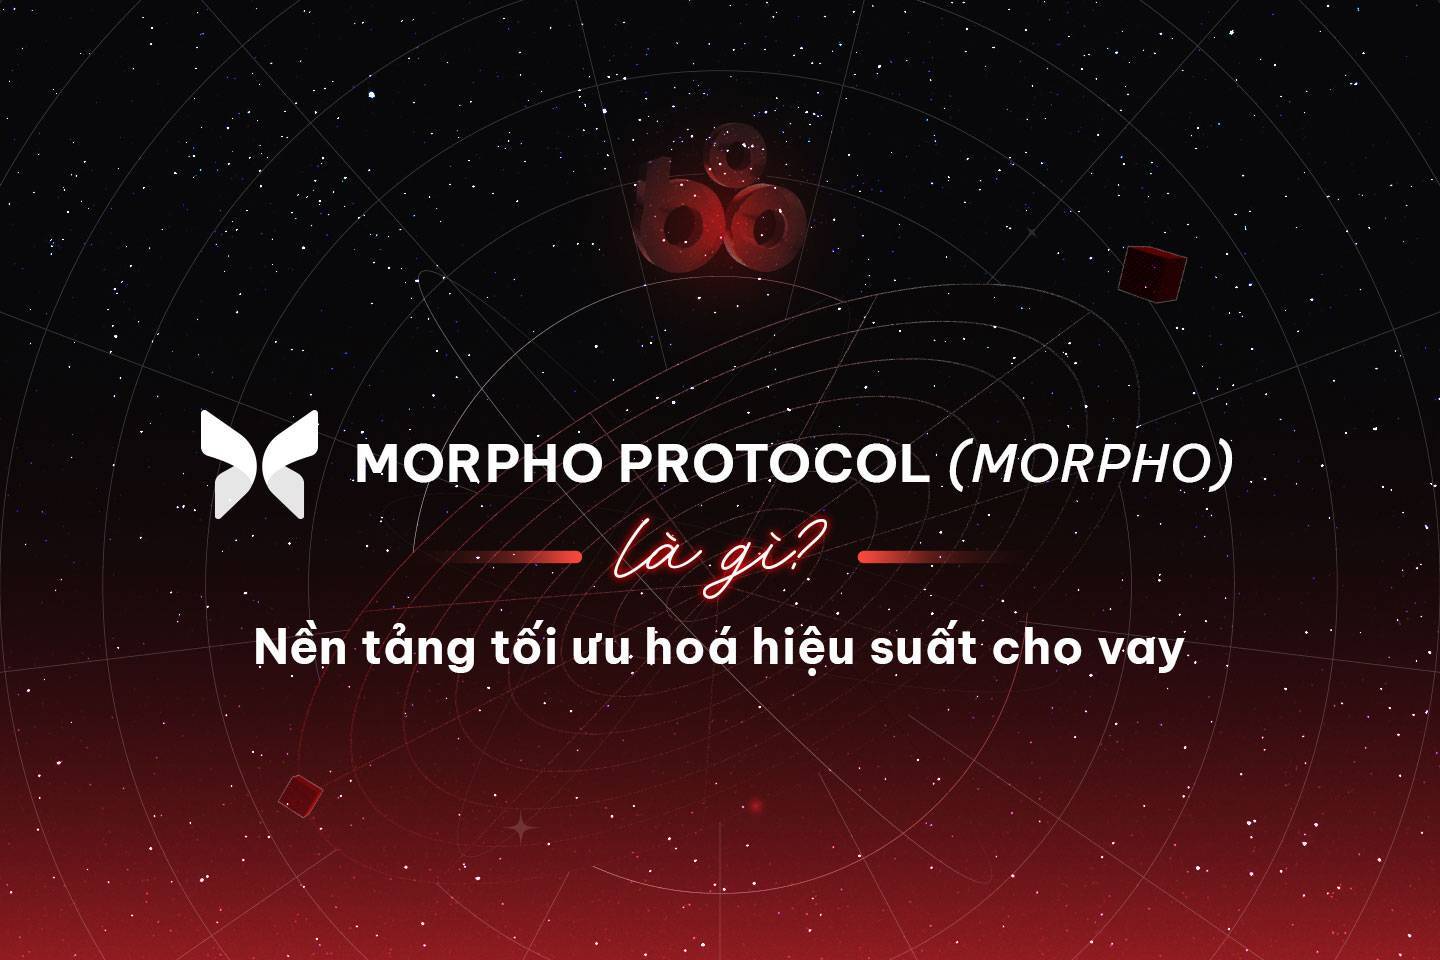 Morpho Protocol morpho Là Gì Nền Tảng Tối Ưu Hoá Hiệu Suất Cho Vay